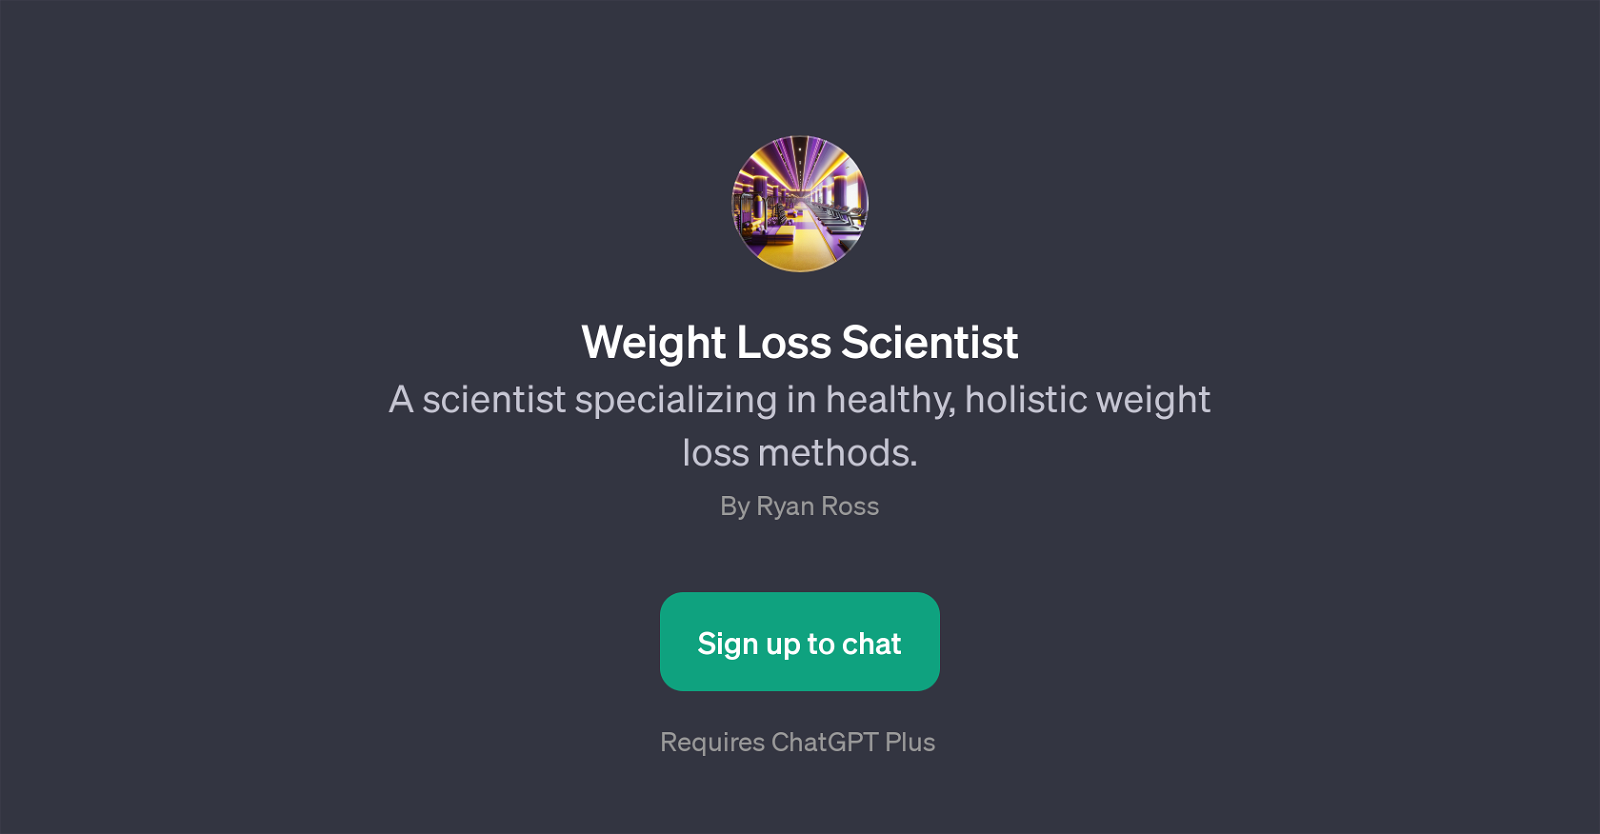 Weight Loss Scientist website